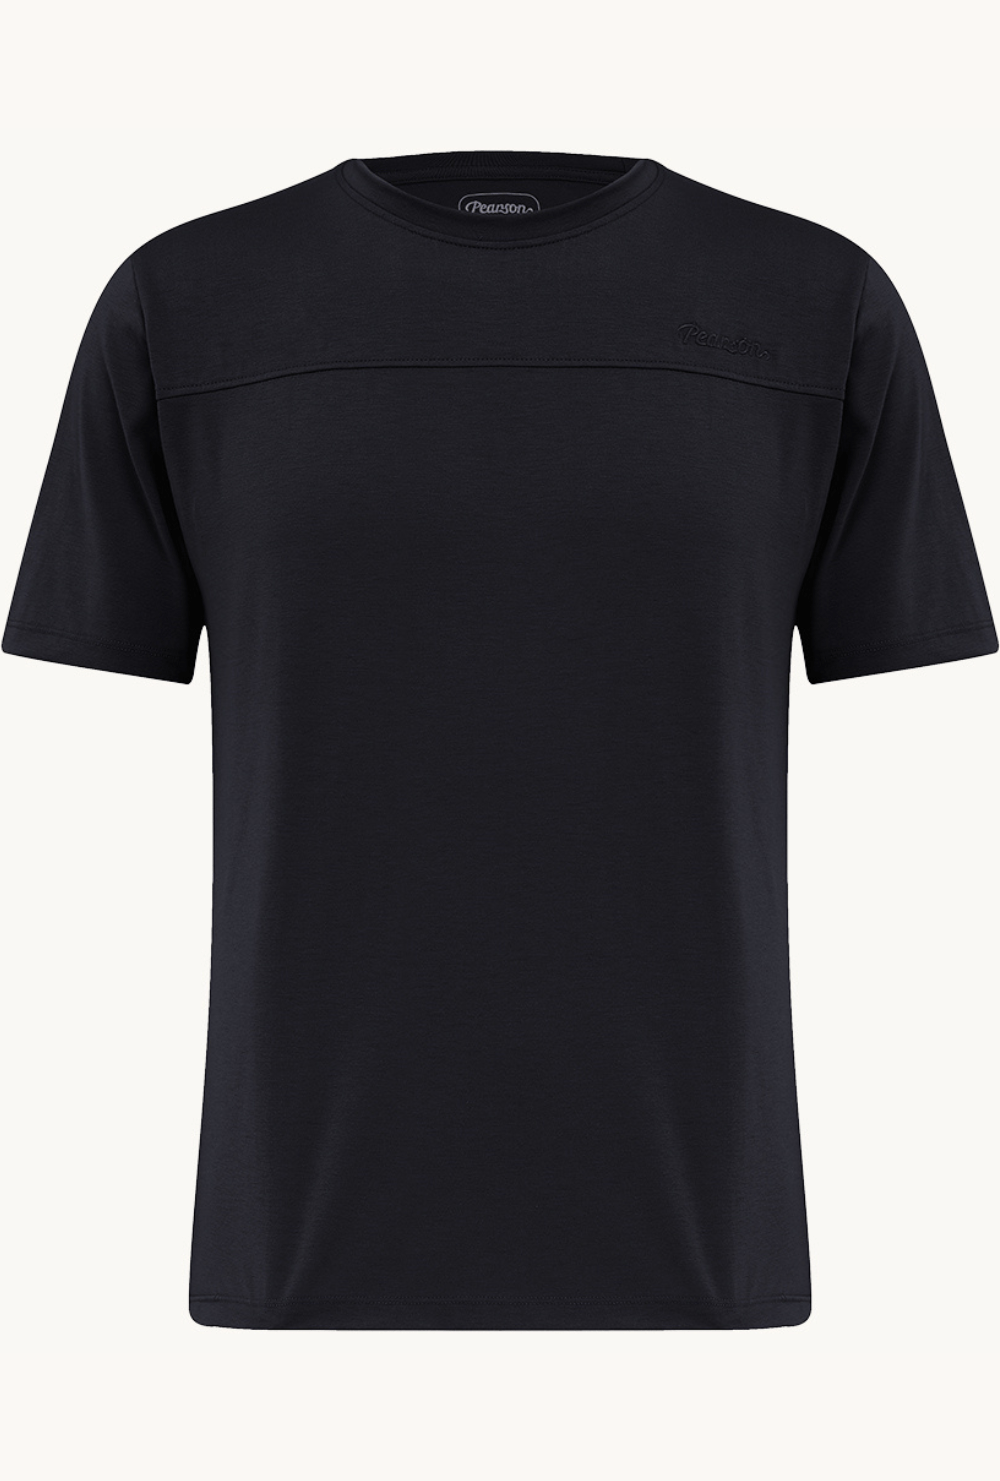 Pearson 1860  High DaysandHolidays - Cycling T-shirt  Black / Xx-large